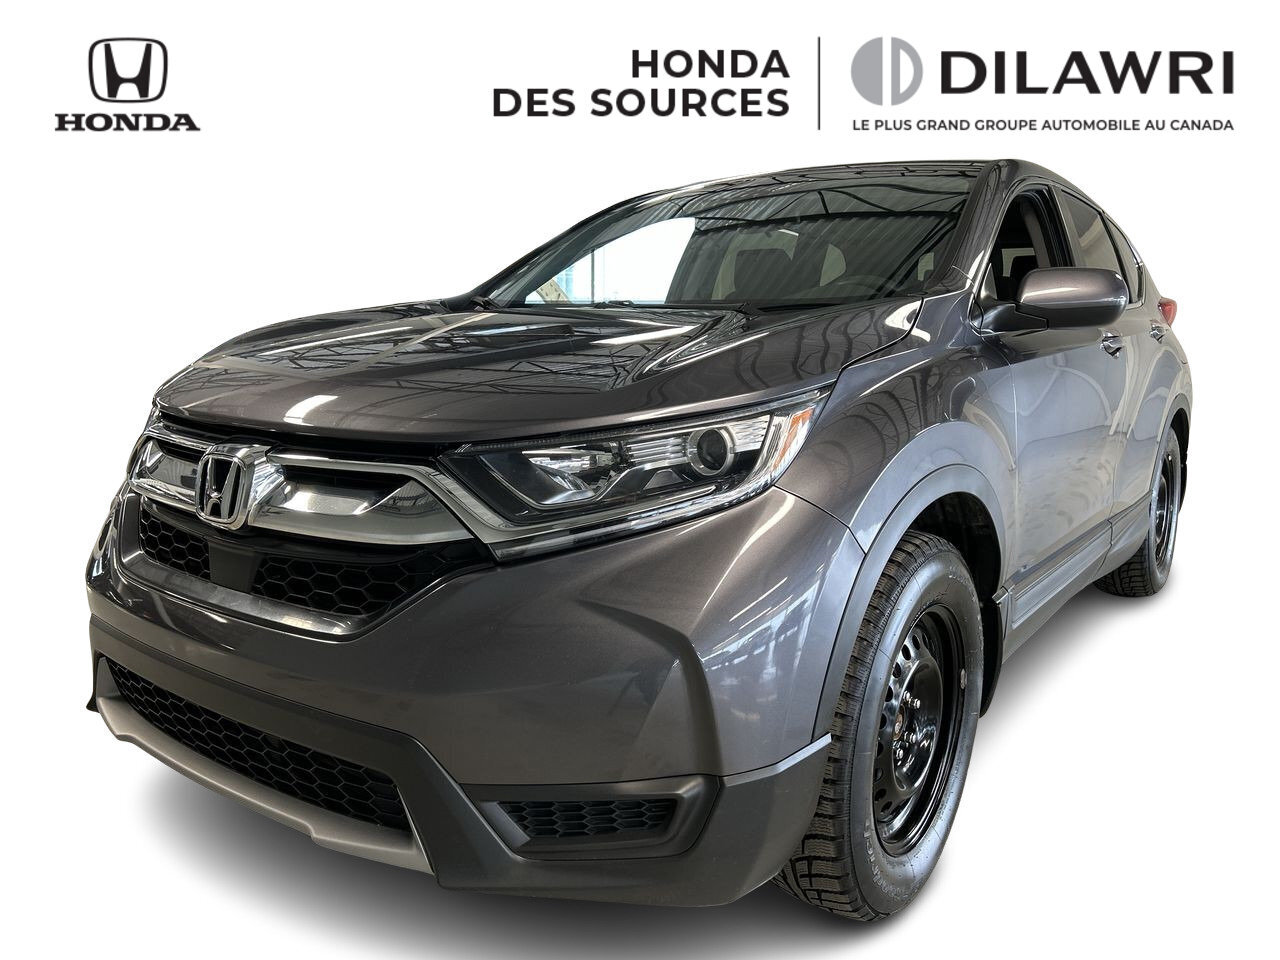 2019 Honda CR-V LX, 4X4, Carplay, Bluetooth, Caméra, Jantes, USB 4